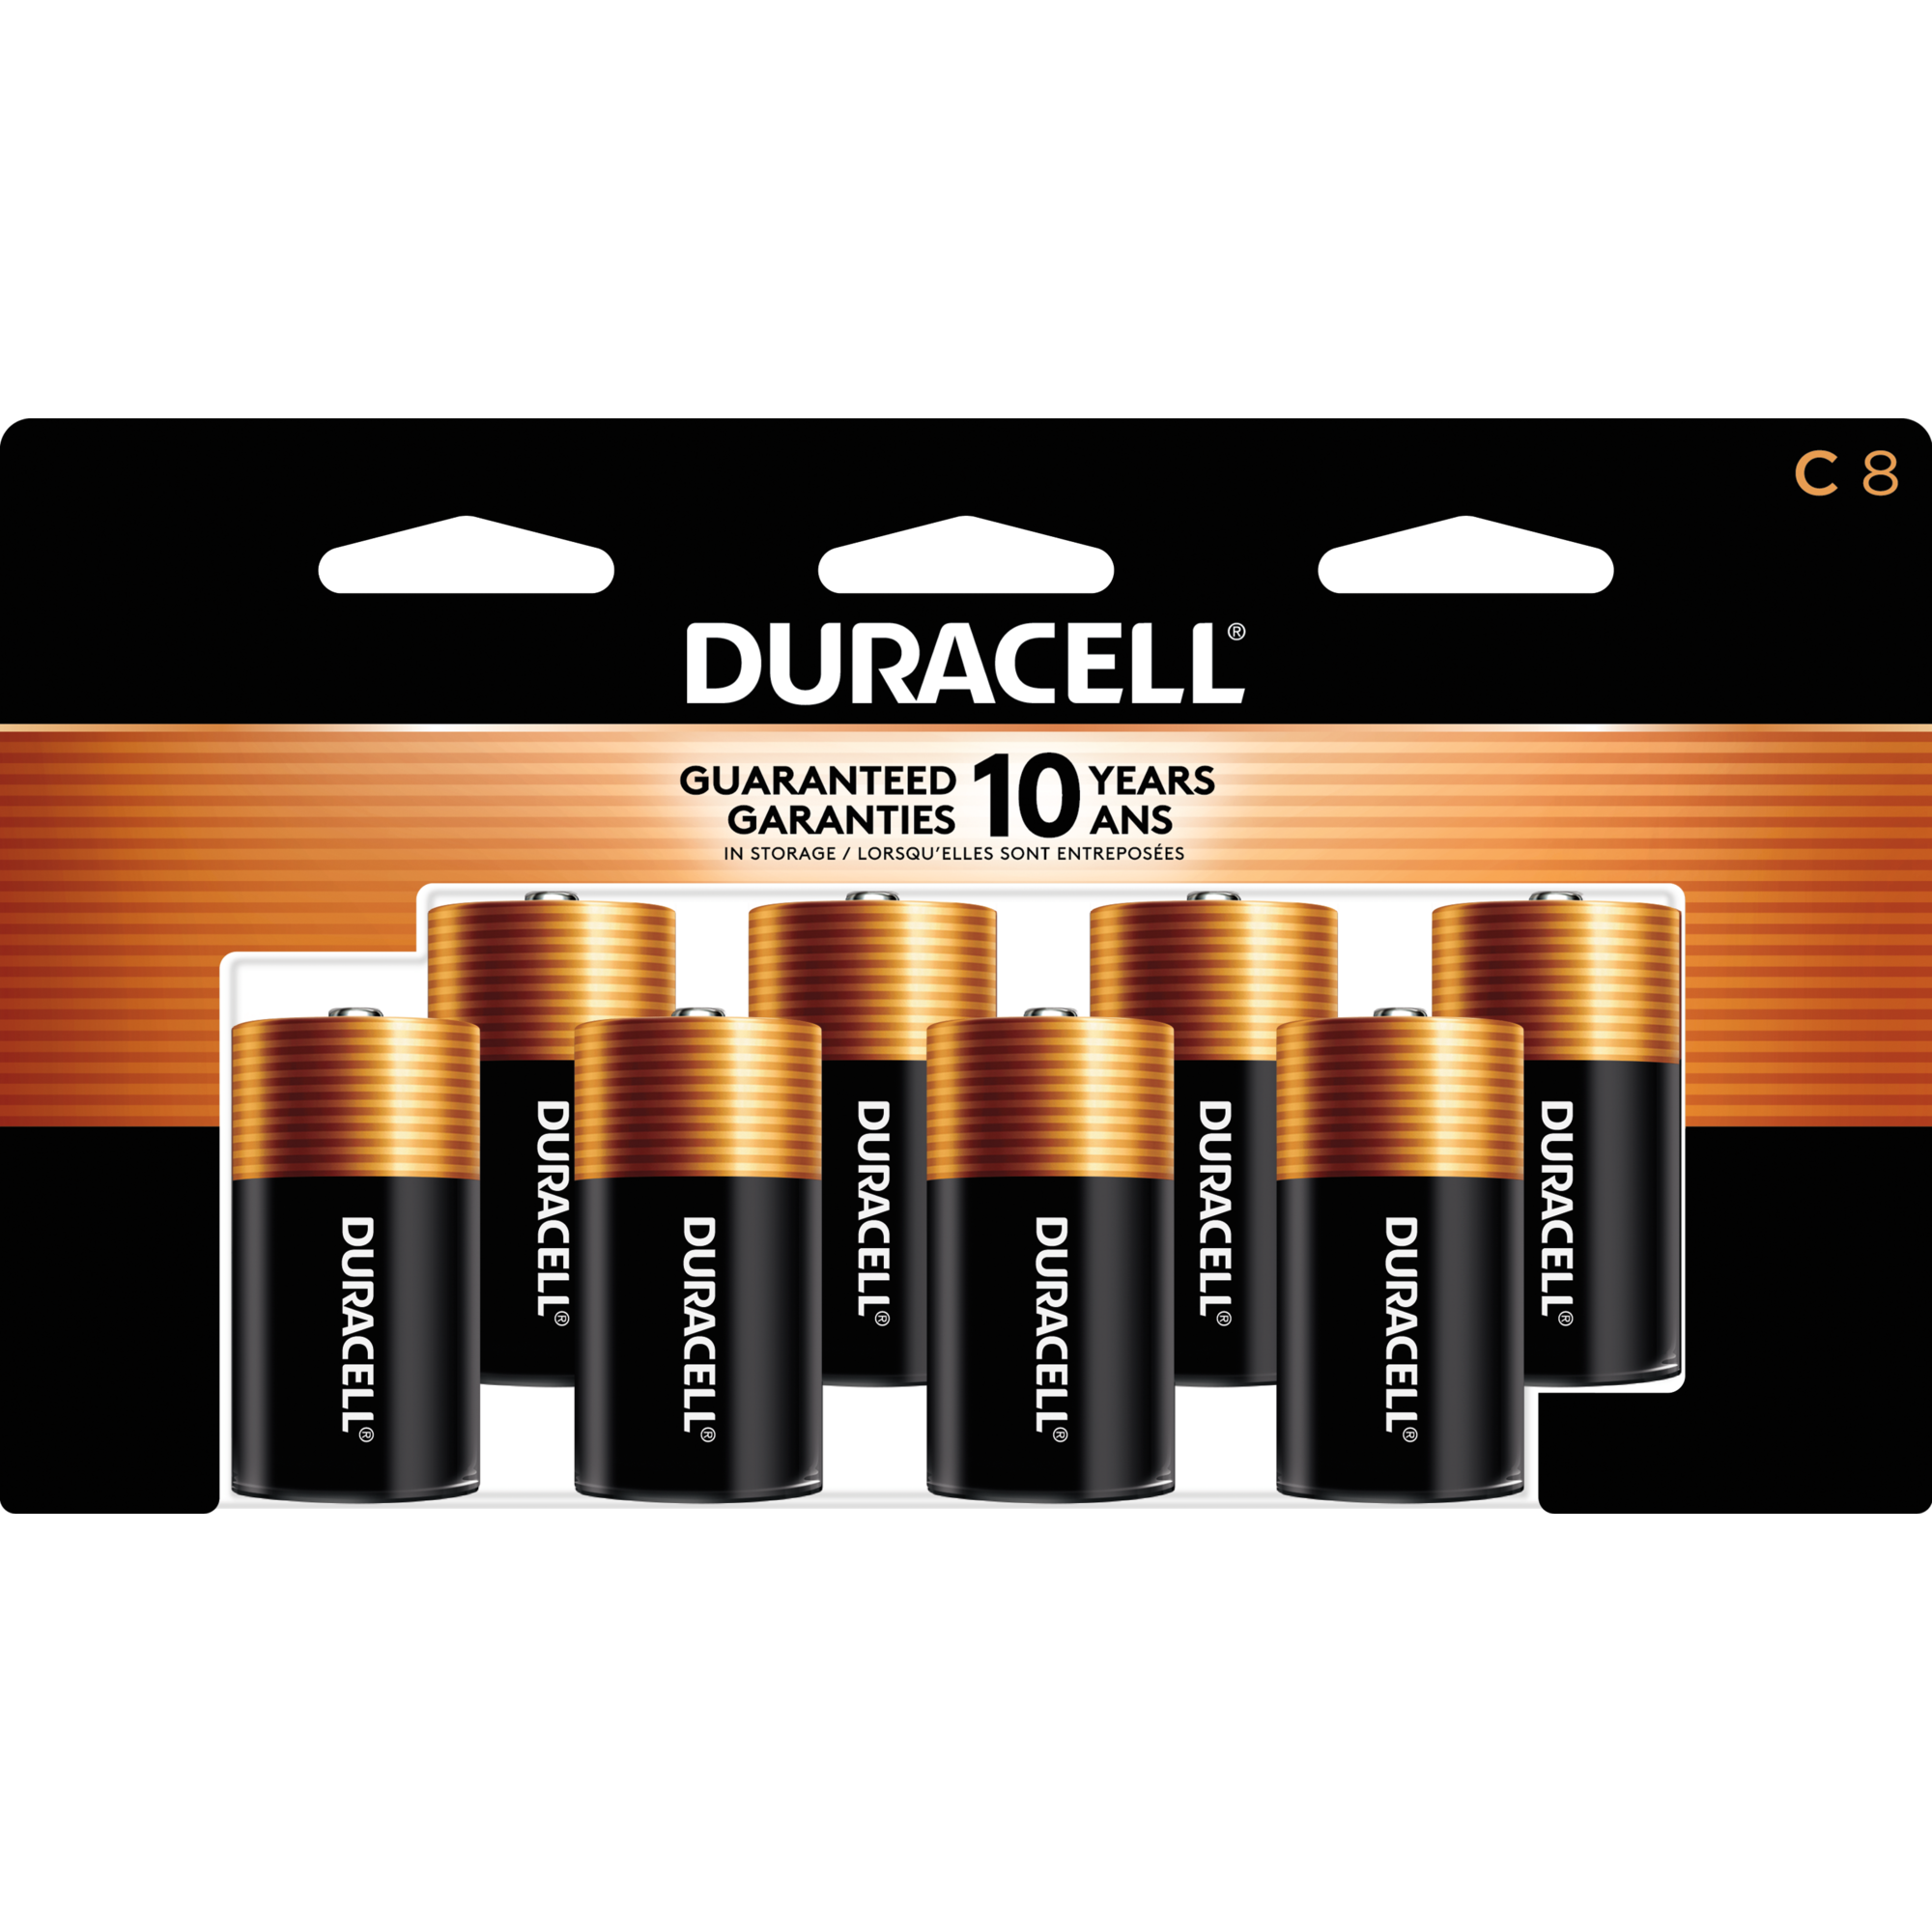 Bateria Duracell C 2Und Duracell